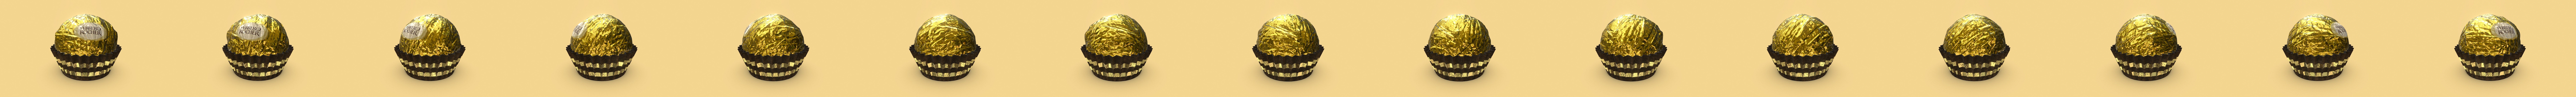 Ferrero rocher : 2 421 images, photos de stock, objets 3D et